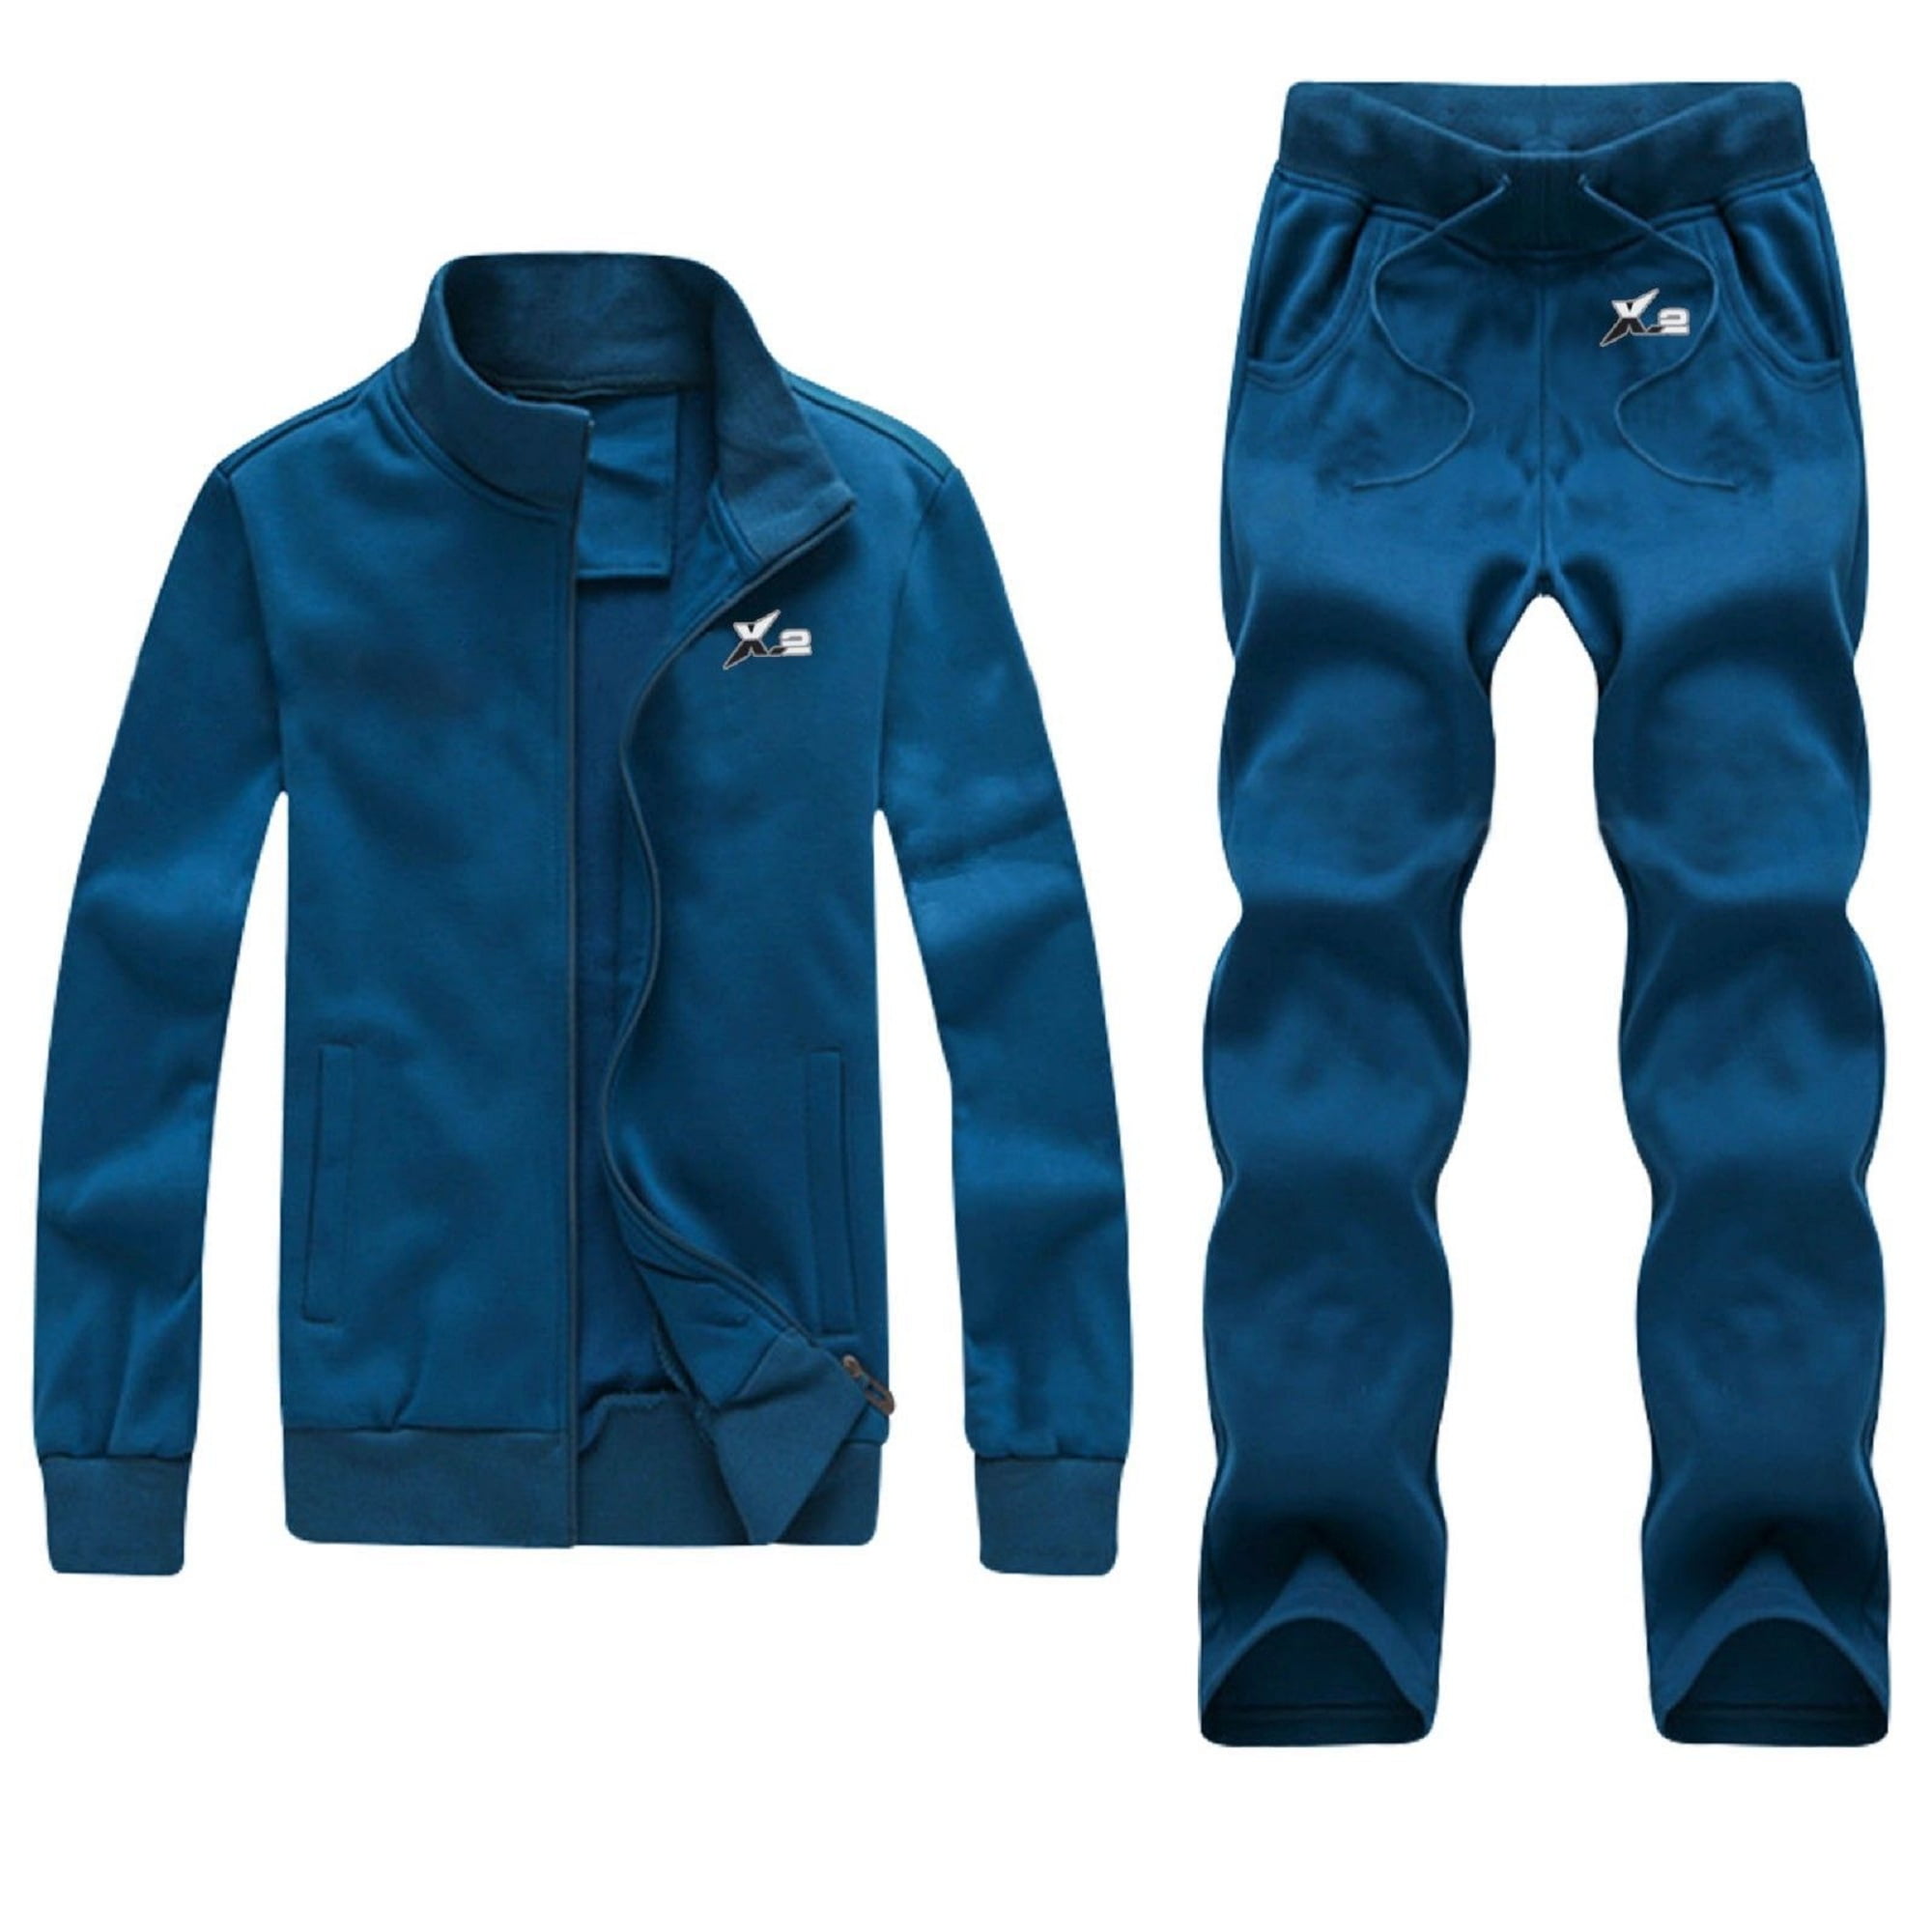 Men's Blue Track Suits